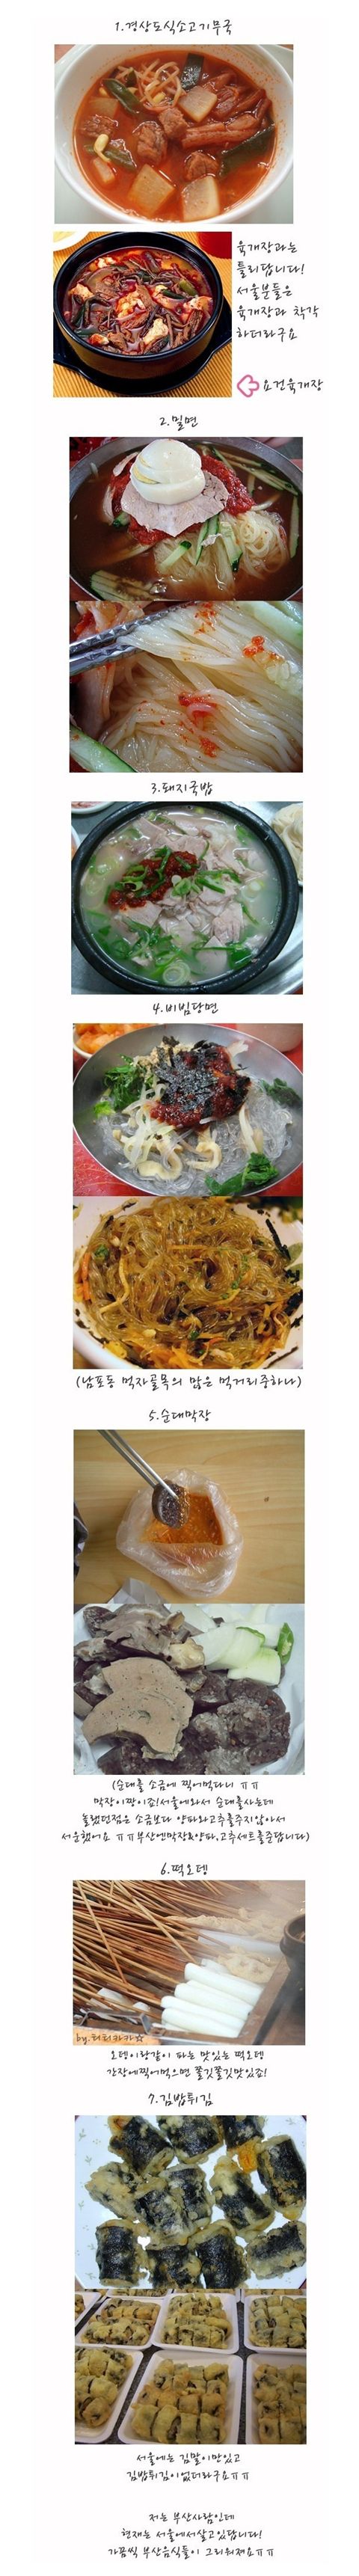 ▲ '서울사람들은 모르는 음식'이라는 제목의 게시물(출처: 온라인 커뮤니티)